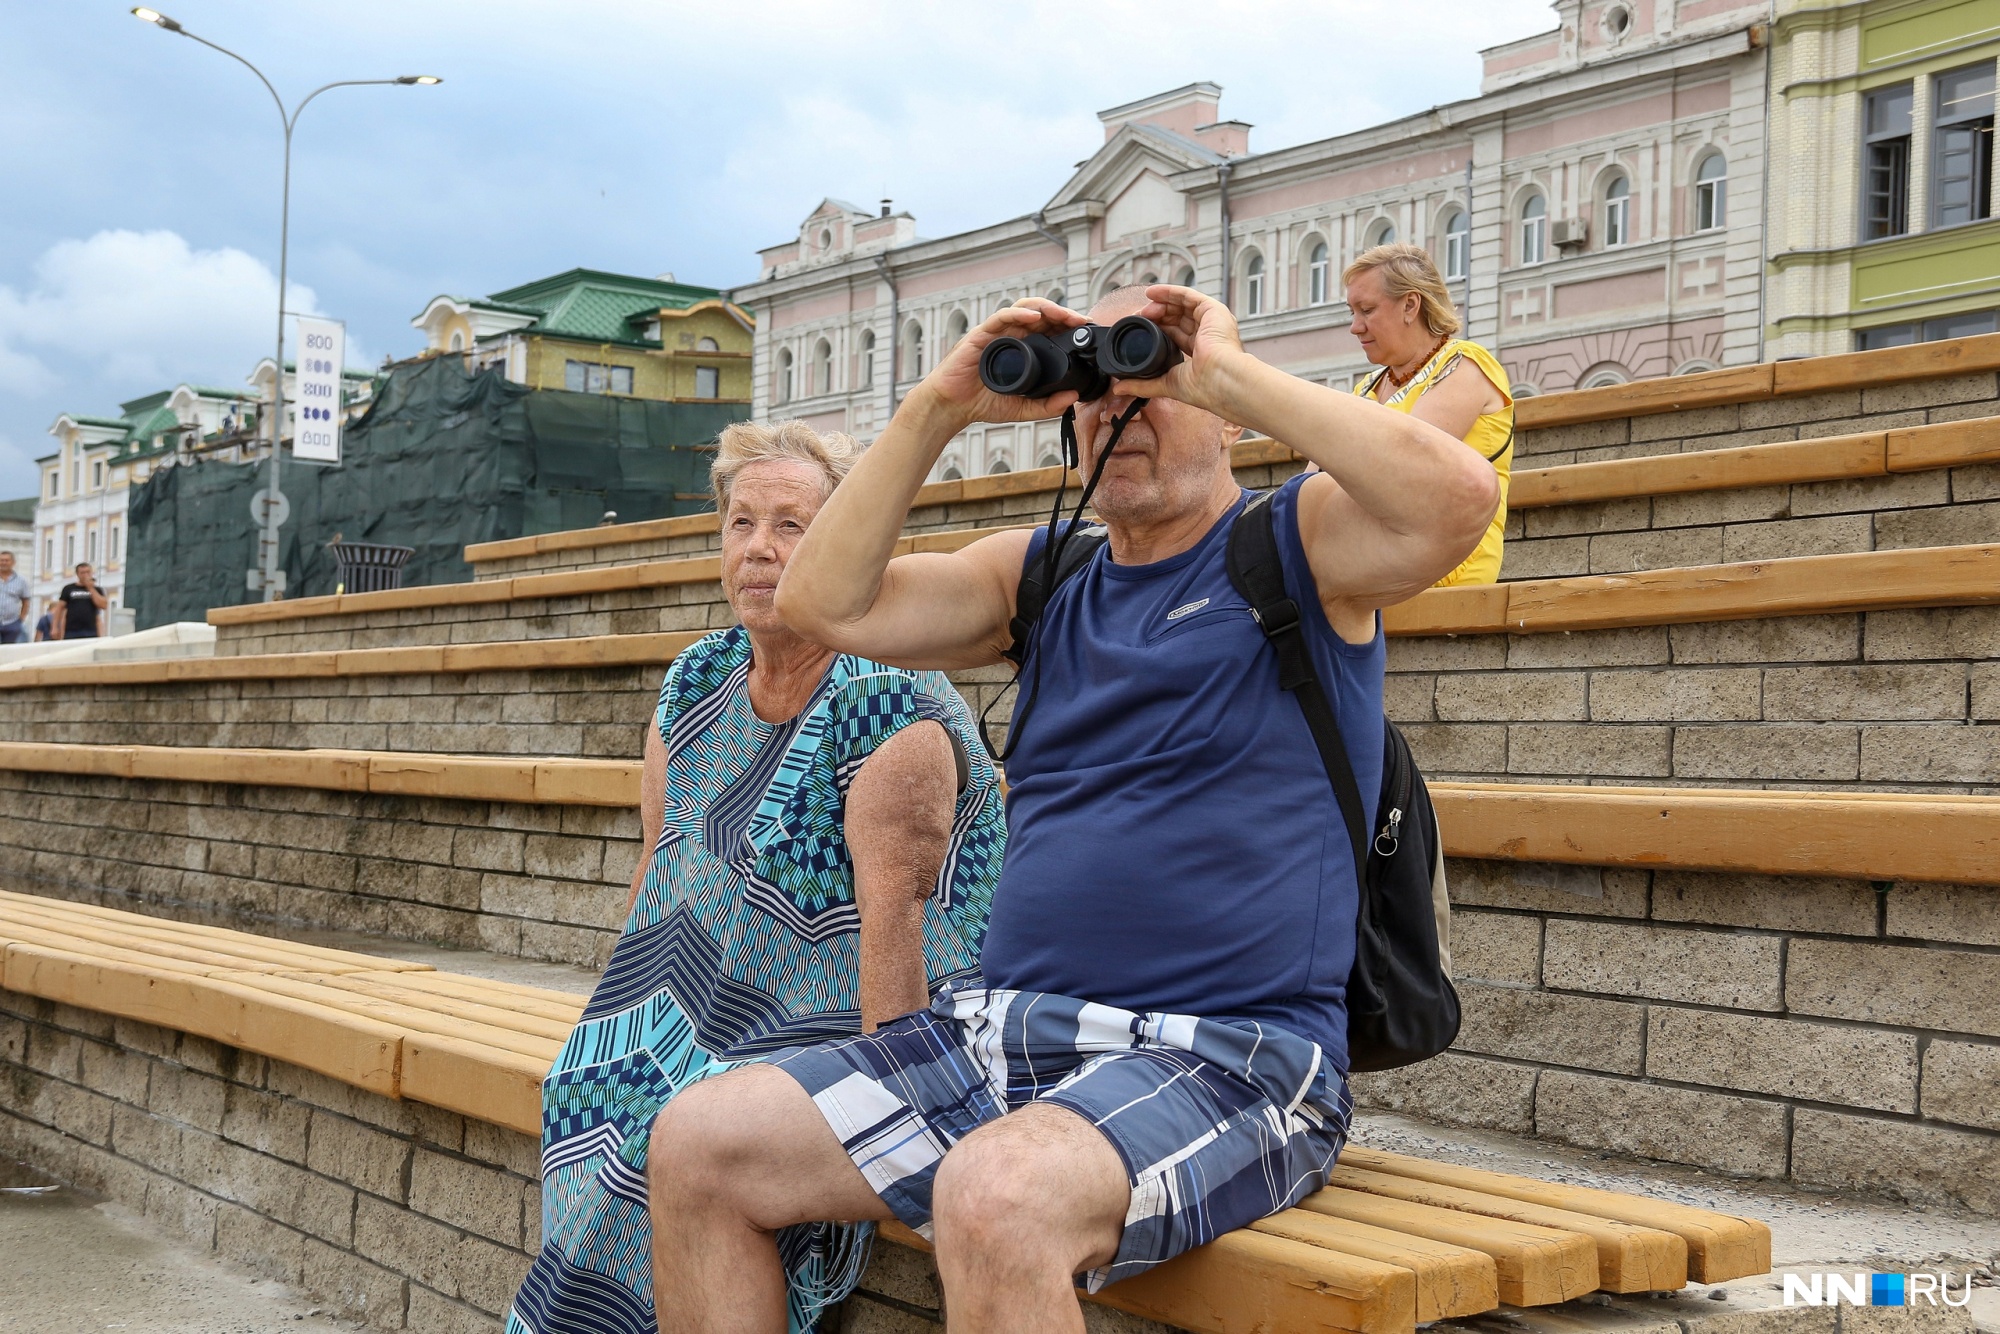 Некоторые нижегородцы наблюдали за полетами со стороны Нижне-Волжской набережной